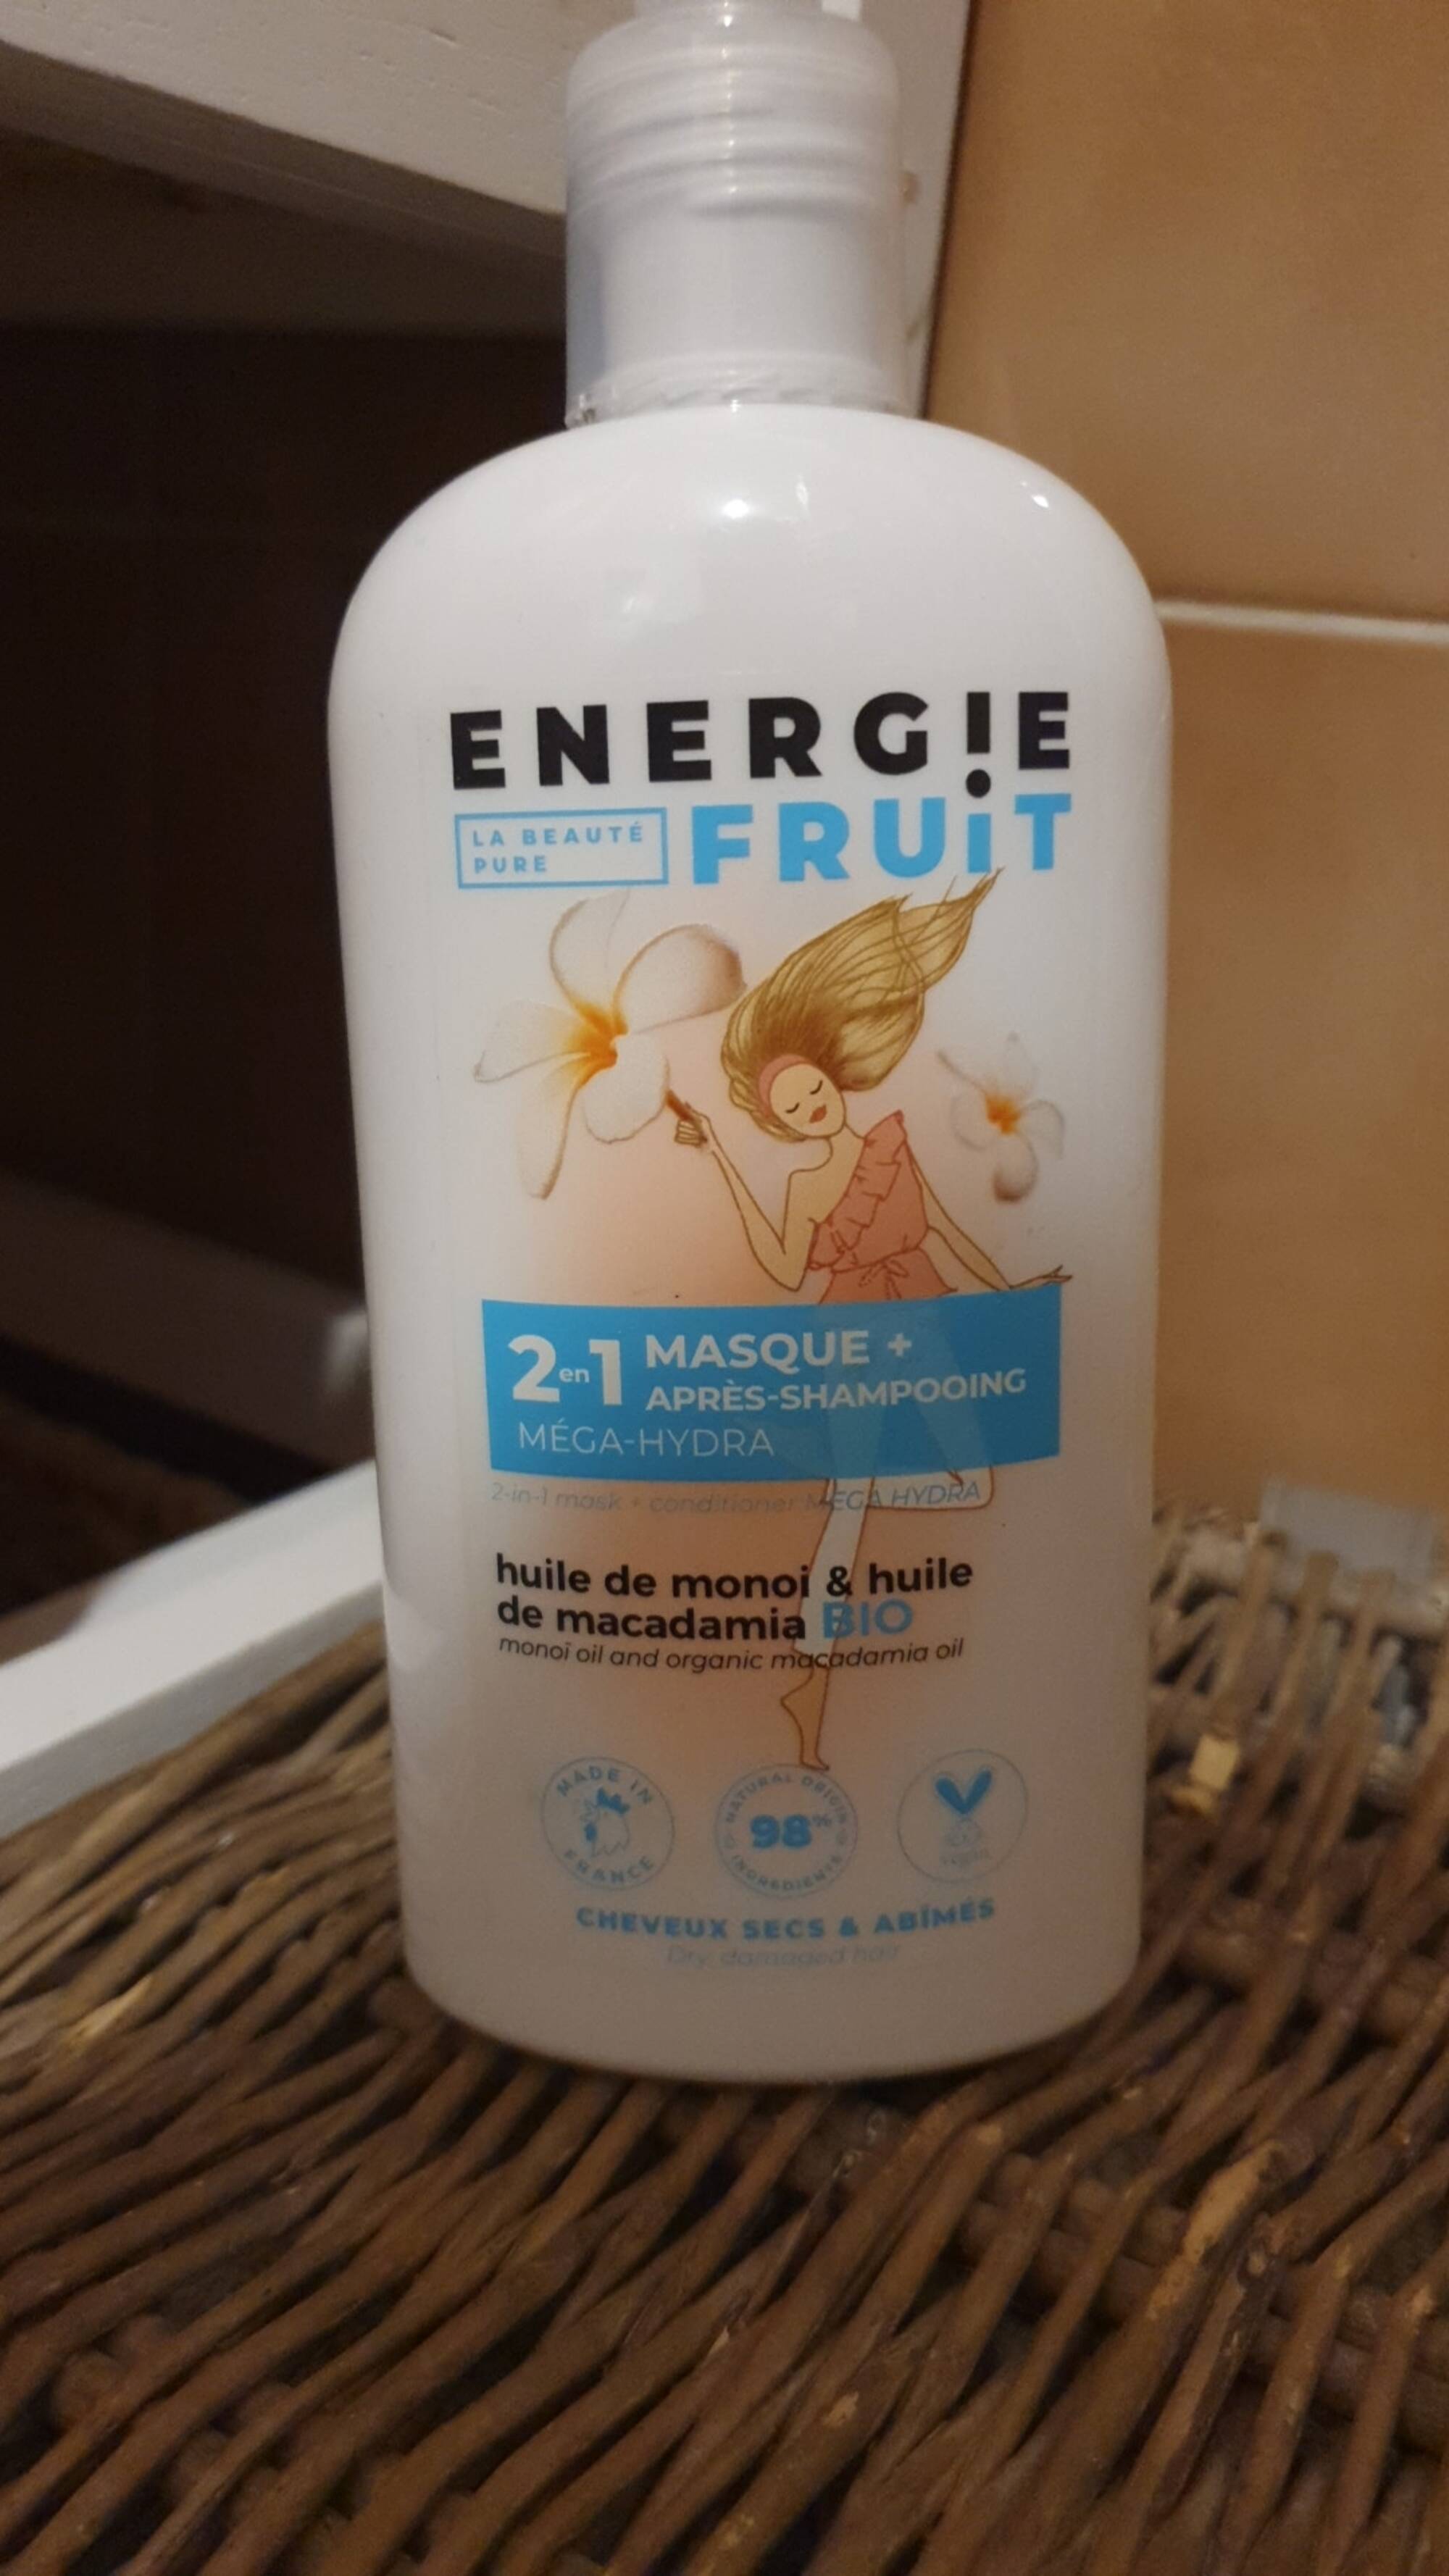 ENERGIE FRUIT - Méga-hydra - 2 en 1 masque + après-shampooing